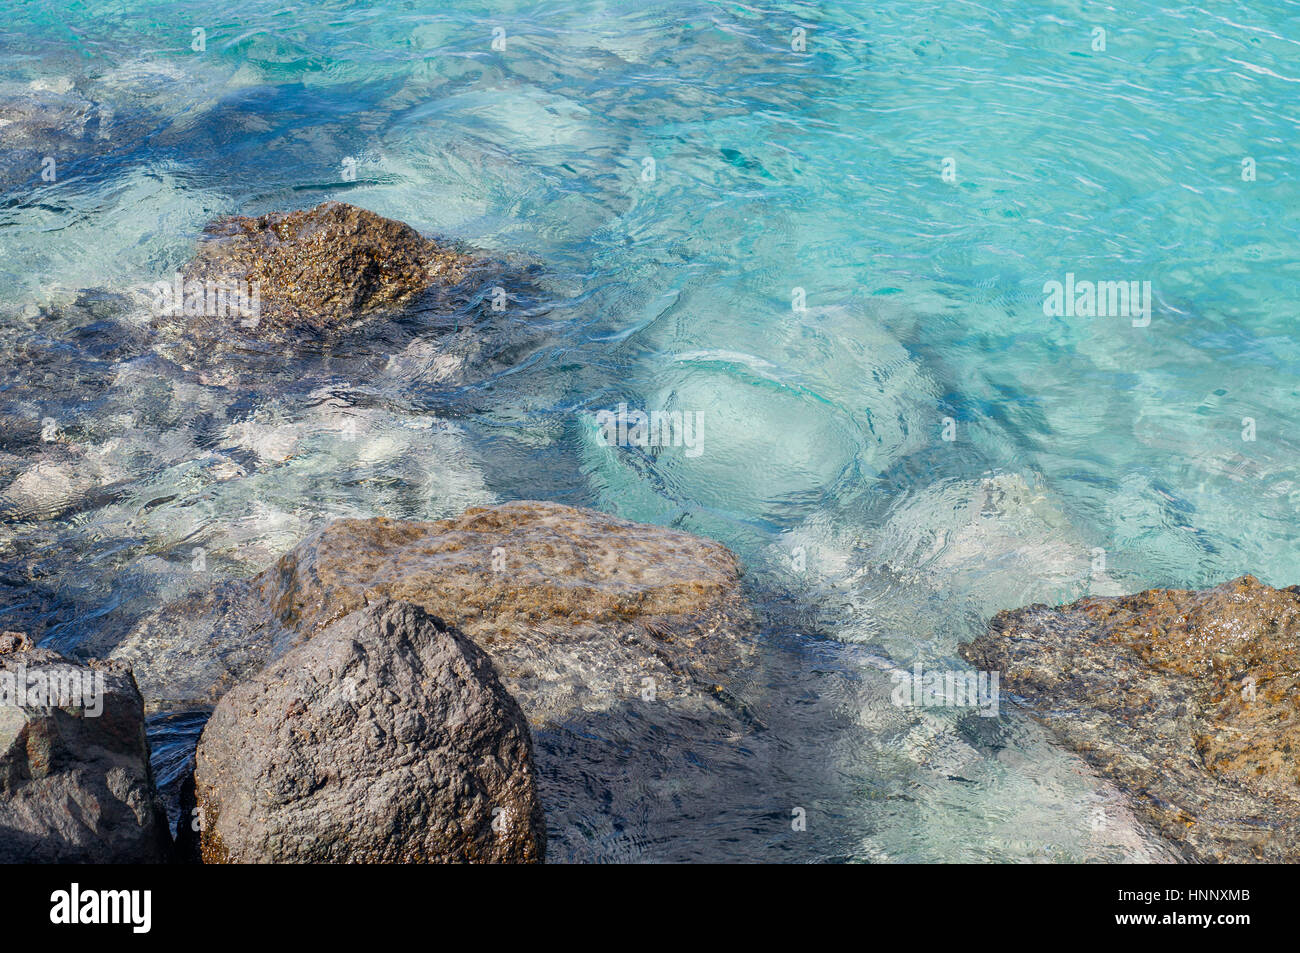 Des pierres et l'eau turquoise transparente, ondulation sur la surface Banque D'Images